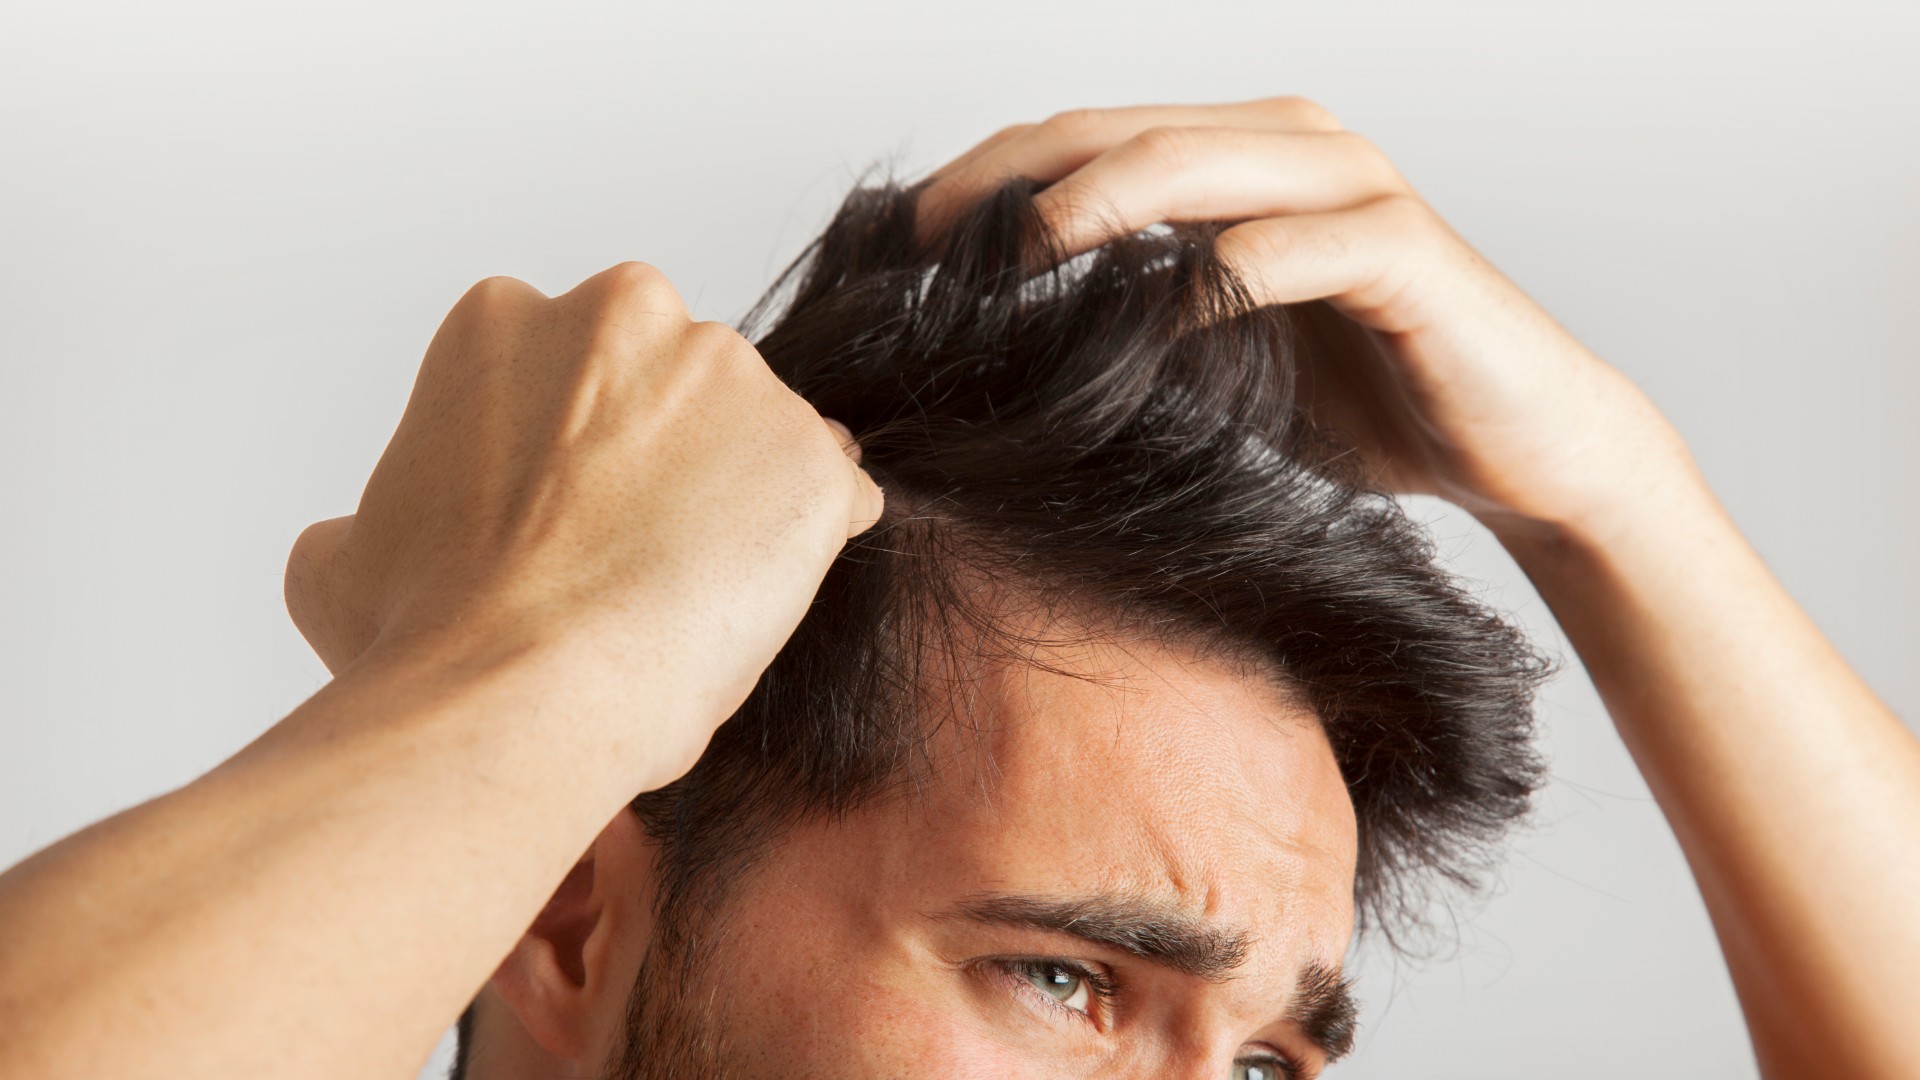 Foto de capa do artigo "Pomada para cabelo masculino: 6 produtos para cuidar dos fios"